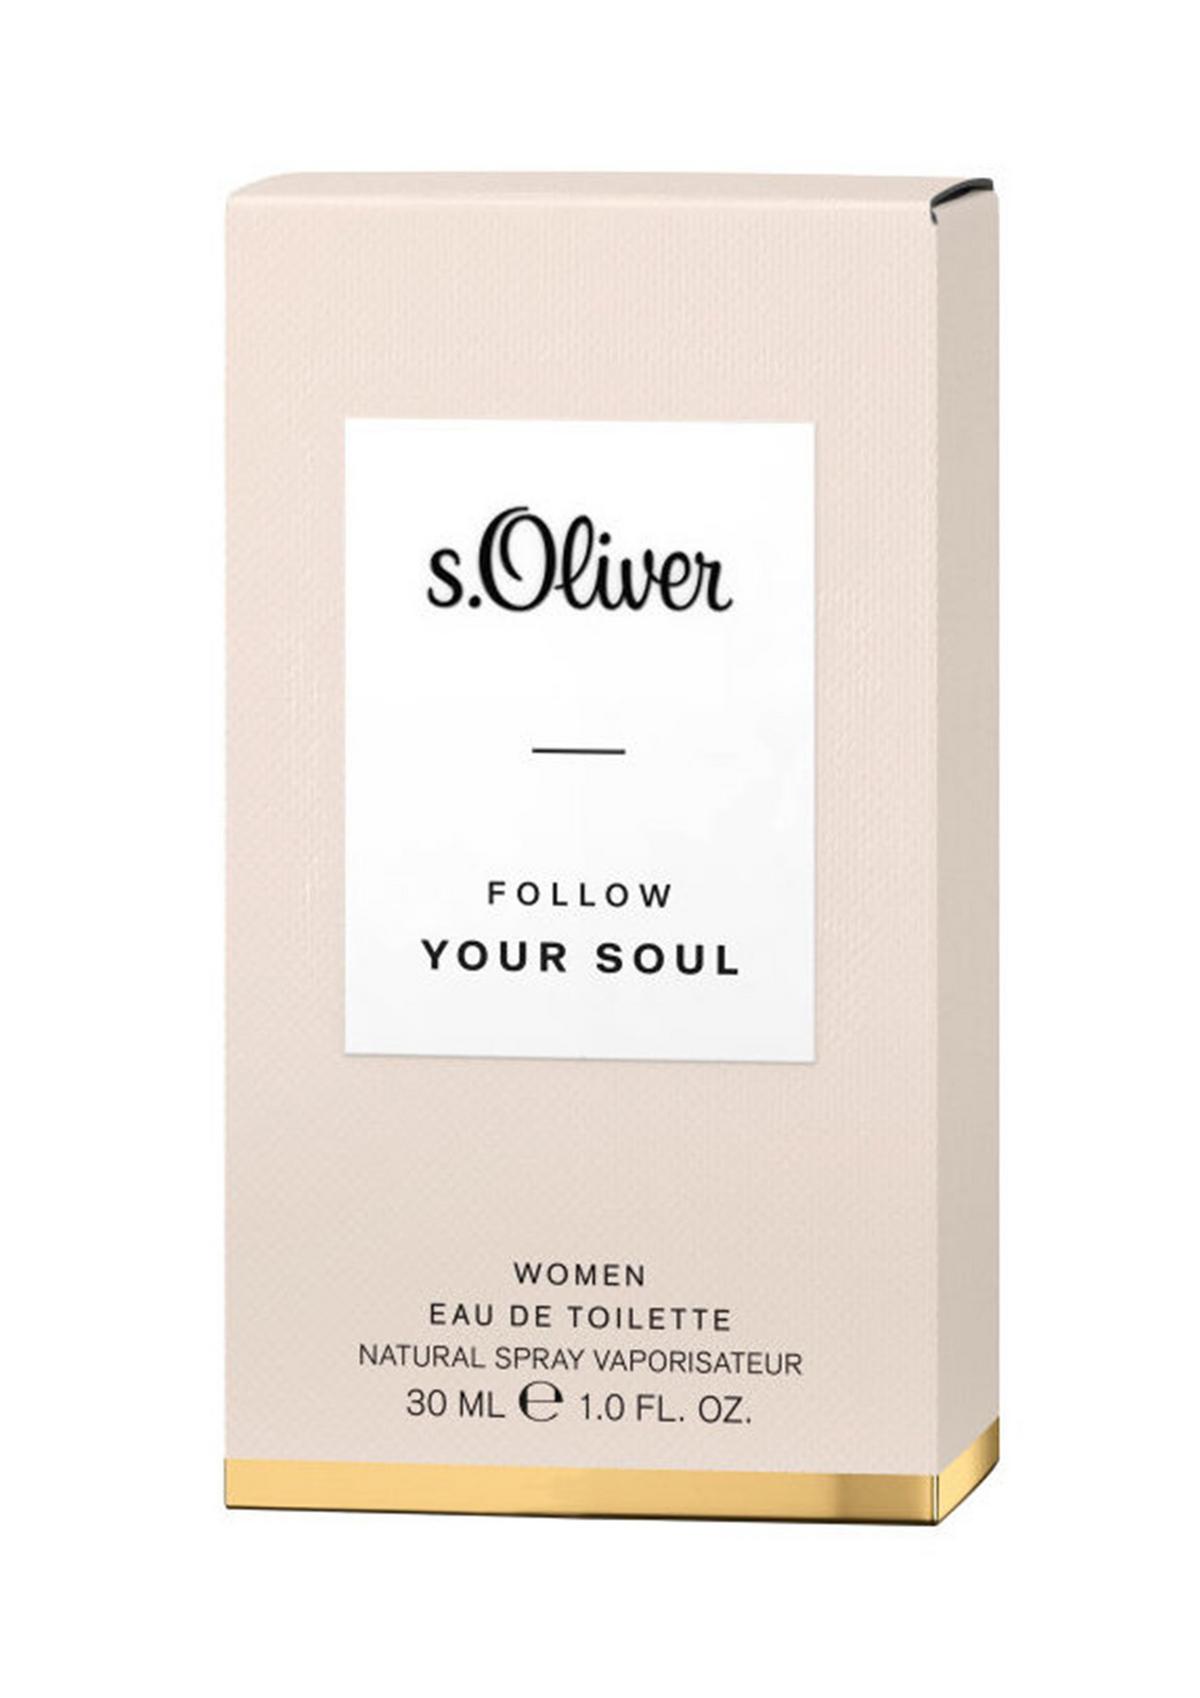 s.Oliver FOLLOW YOUR SOUL eau de toilette, 30 ml